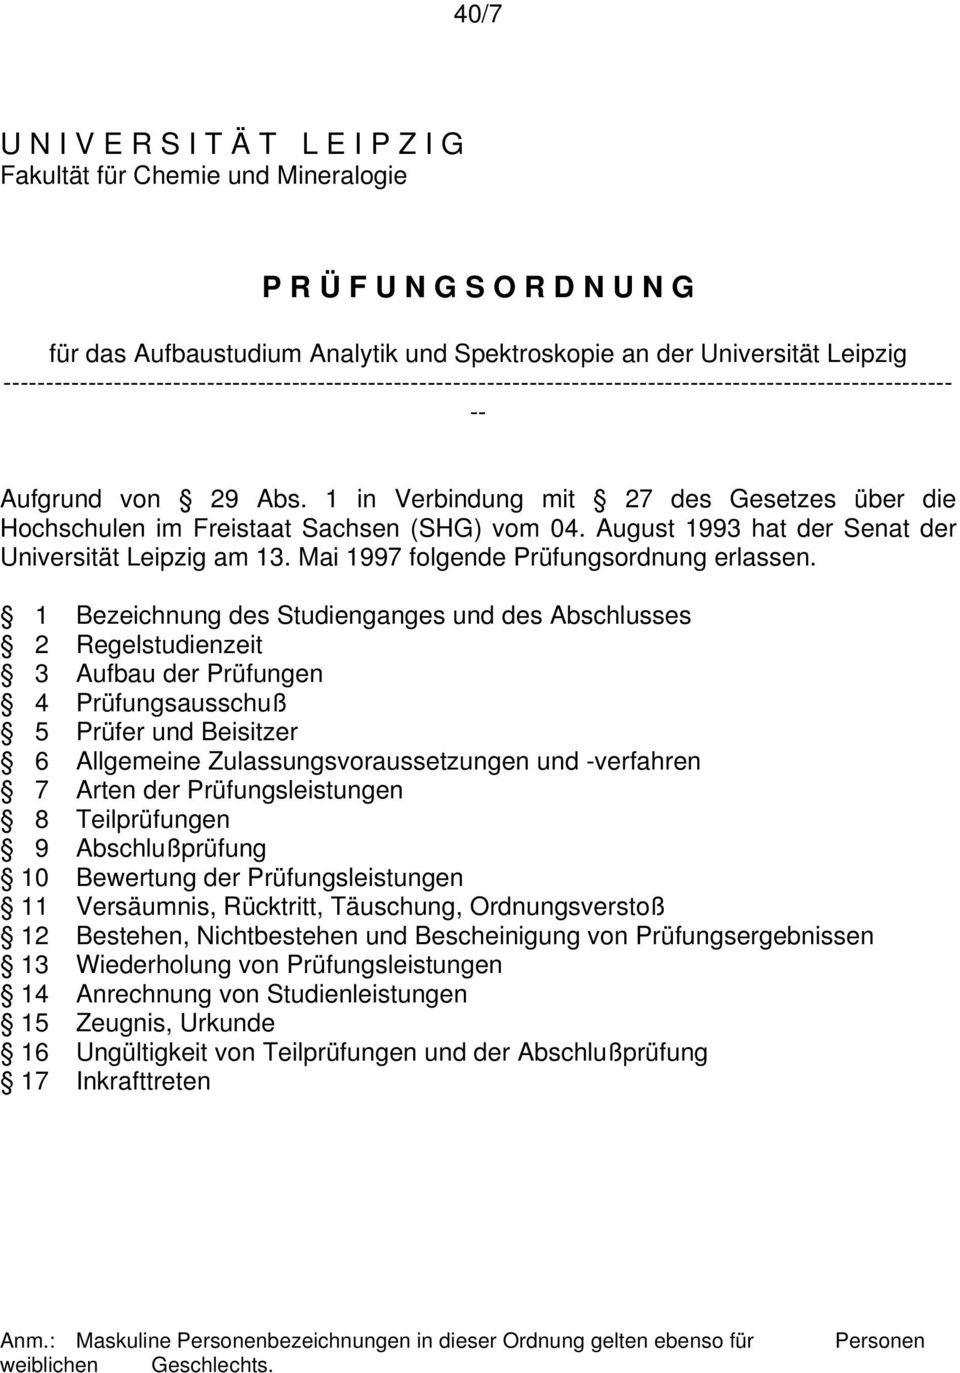 1 in Verbindung mit 27 des Gesetzes über die Hochschulen im Freistaat Sachsen (SHG) vom 04. August 1993 hat der Senat der Universität Leipzig am 13. Mai 1997 folgende Prüfungsordnung erlassen.